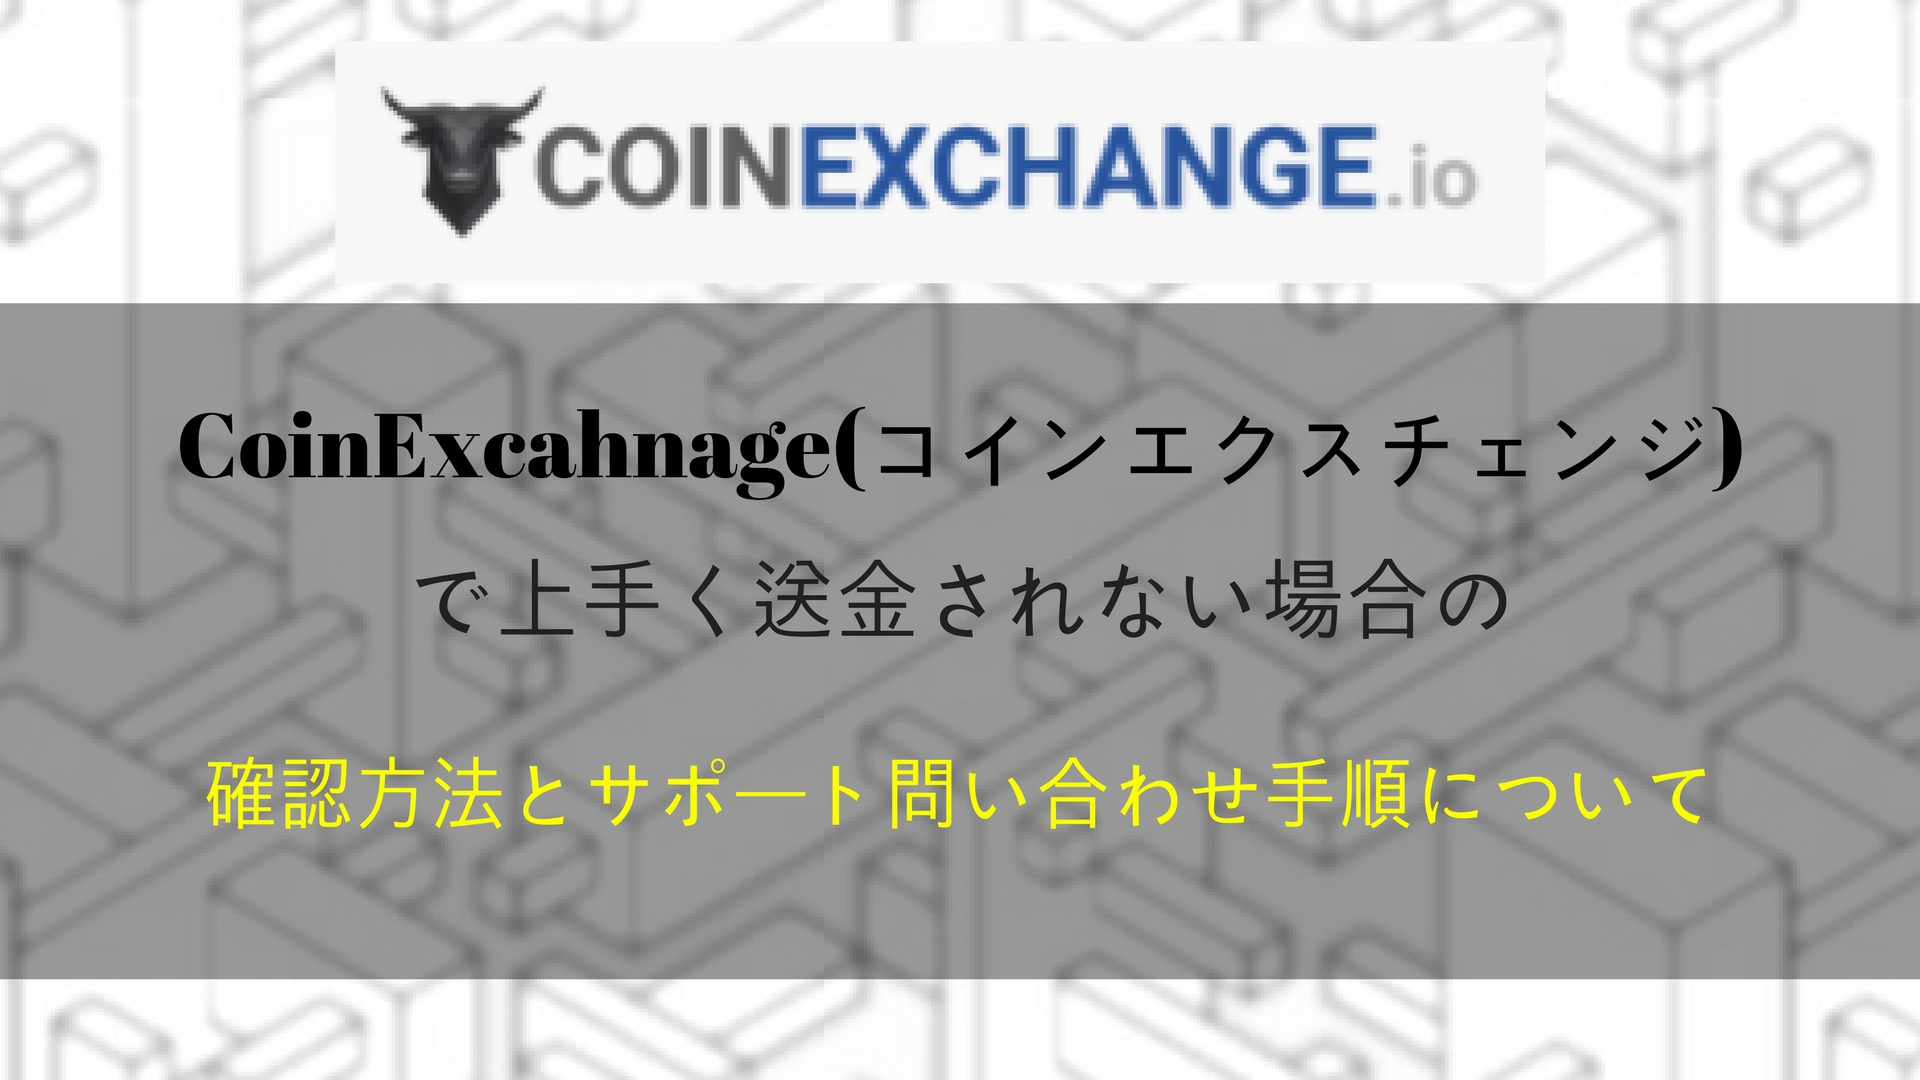 使い方 Coinexchange コインエクスチェンジ の登録方法から買い方について解説